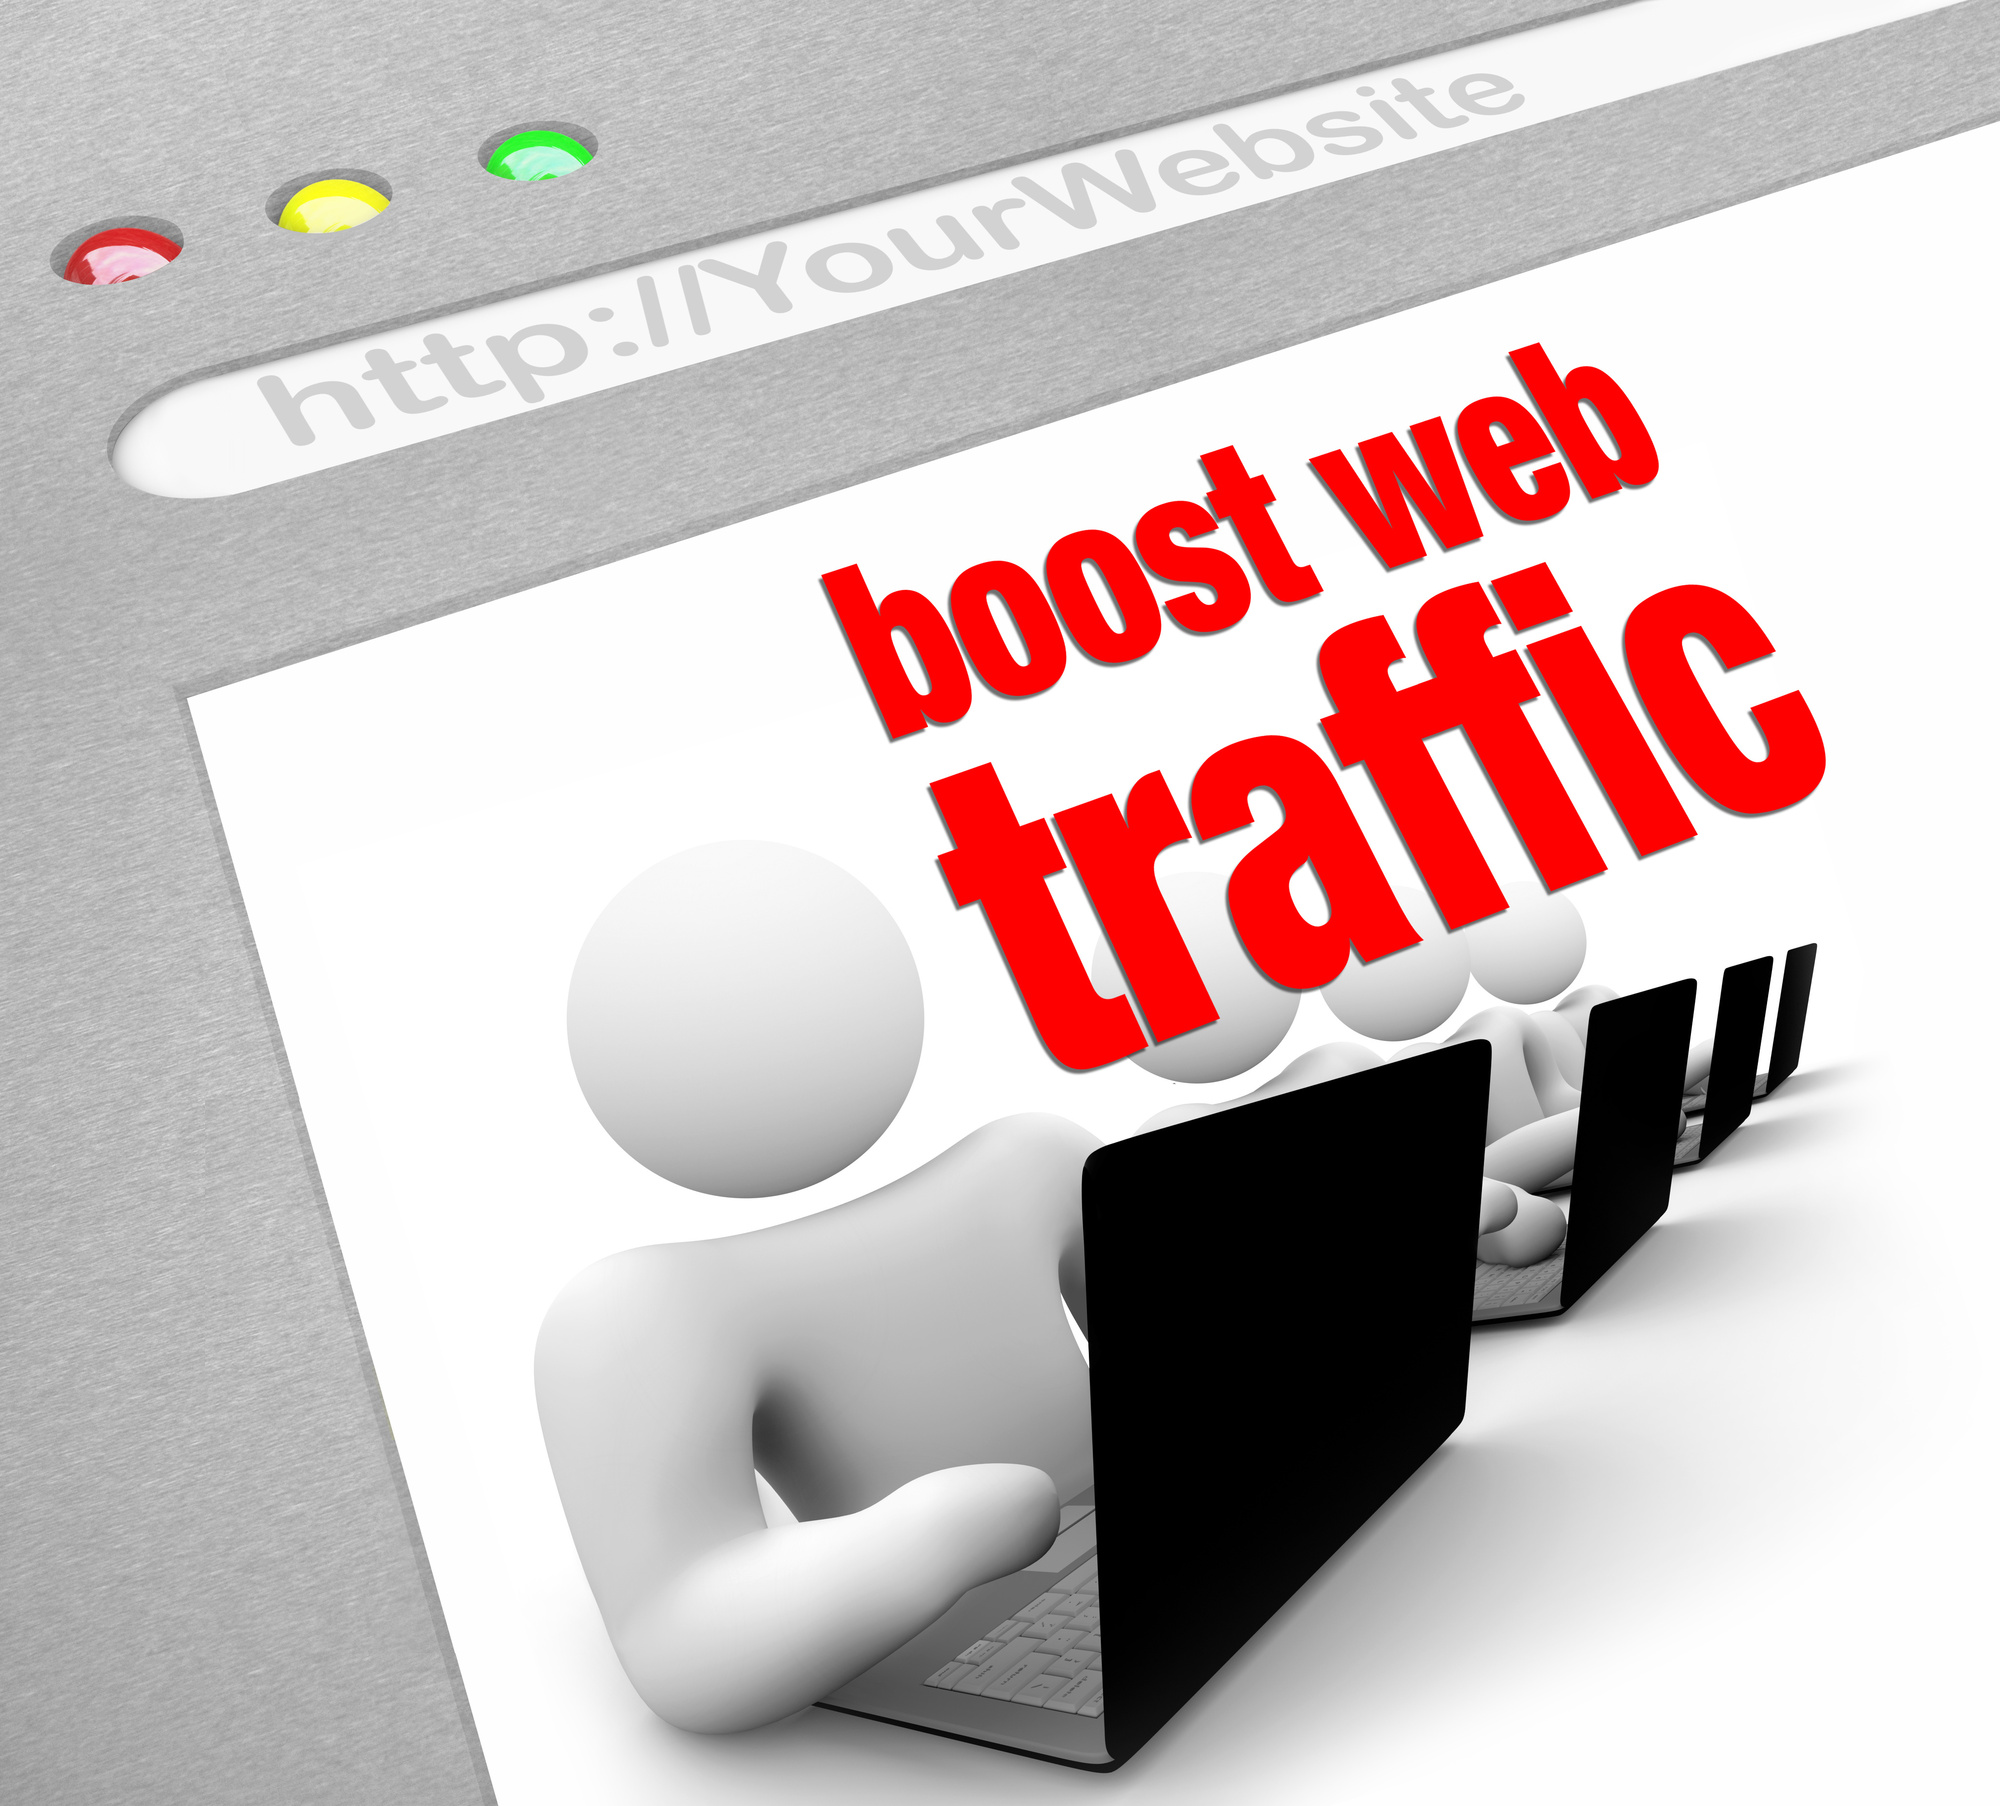 boost web traffic